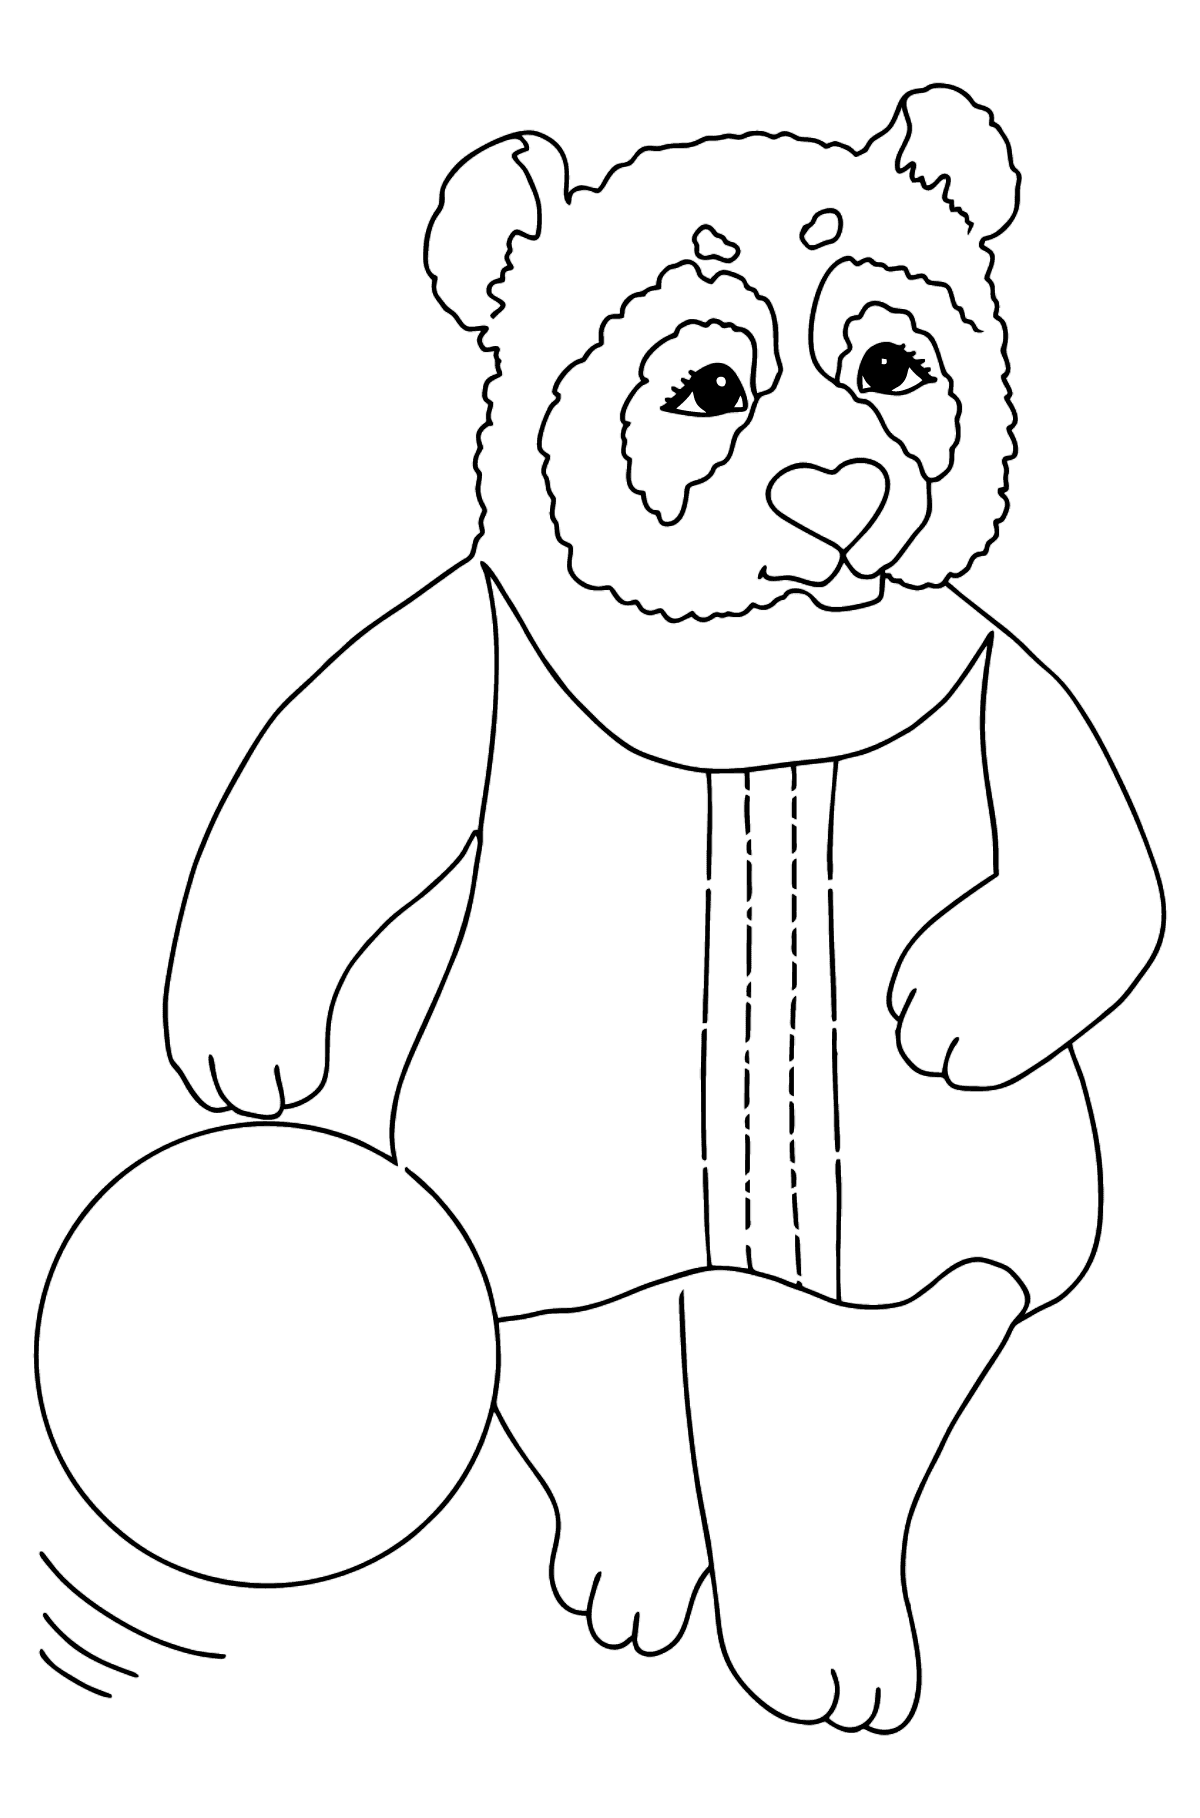 Tegning til farvning panda til babyer (let) - Tegninger til farvelægning for børn